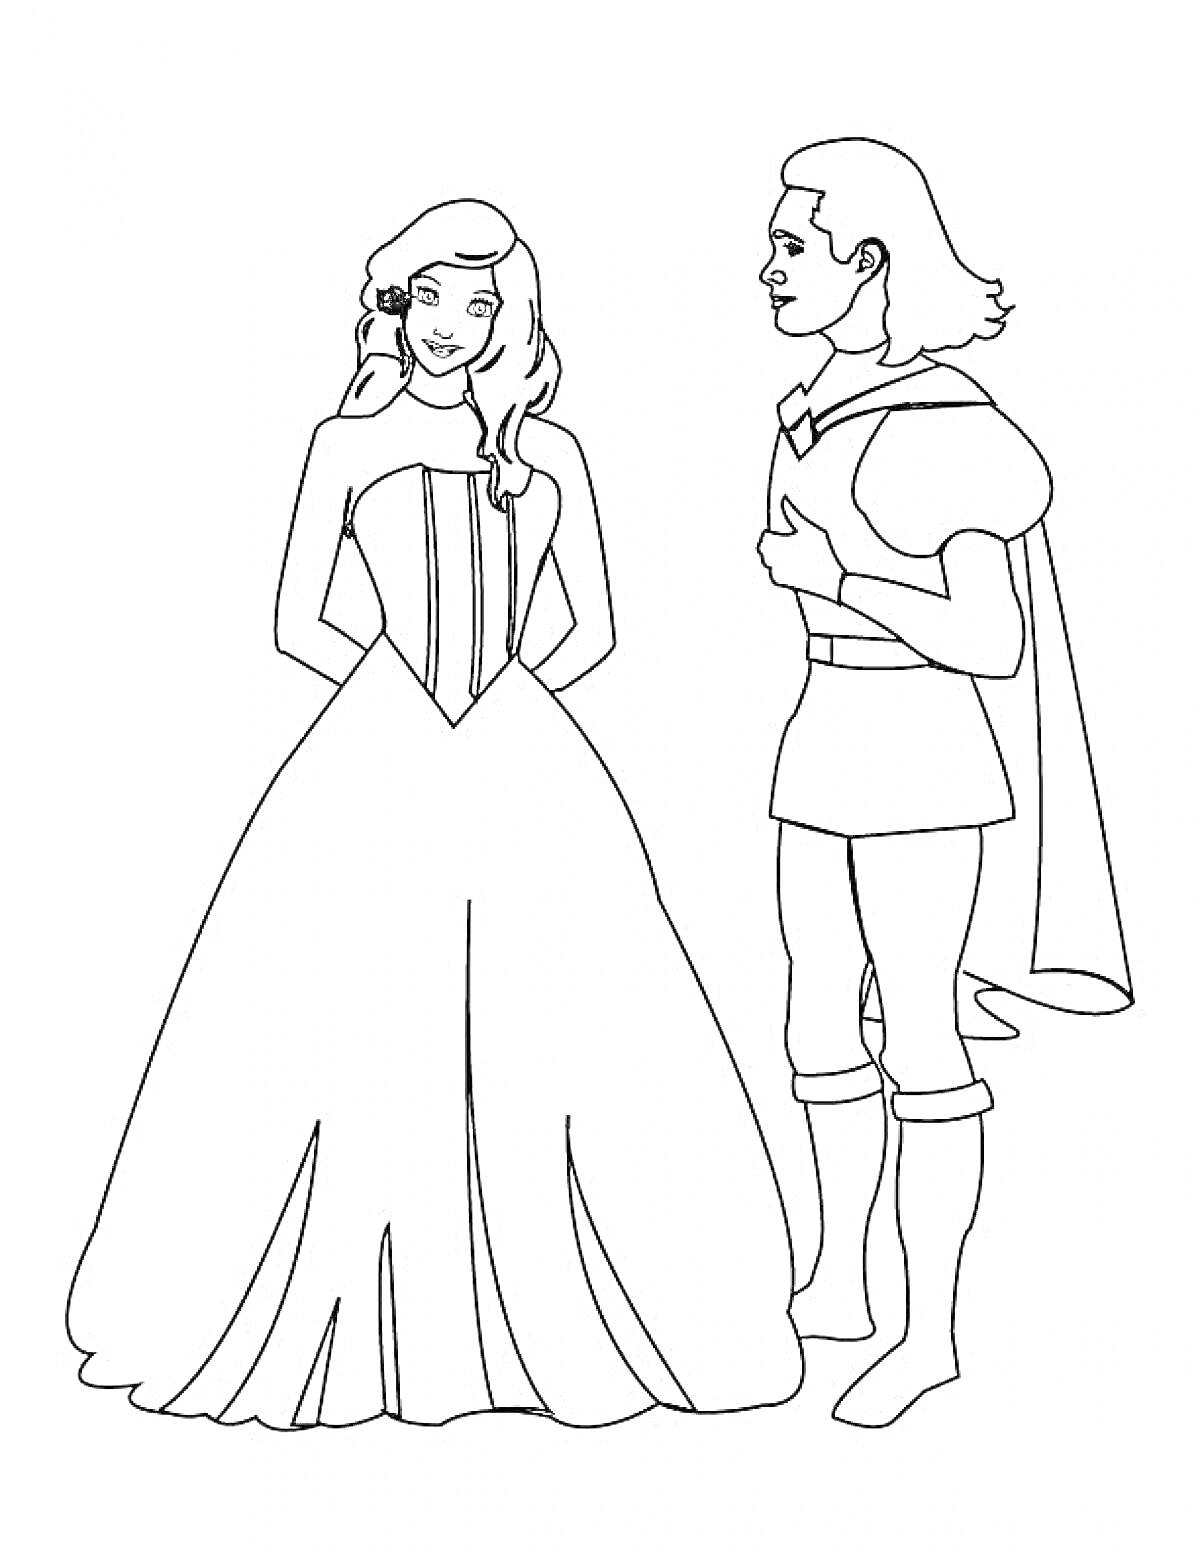 Принц и принцесса стоят вместе